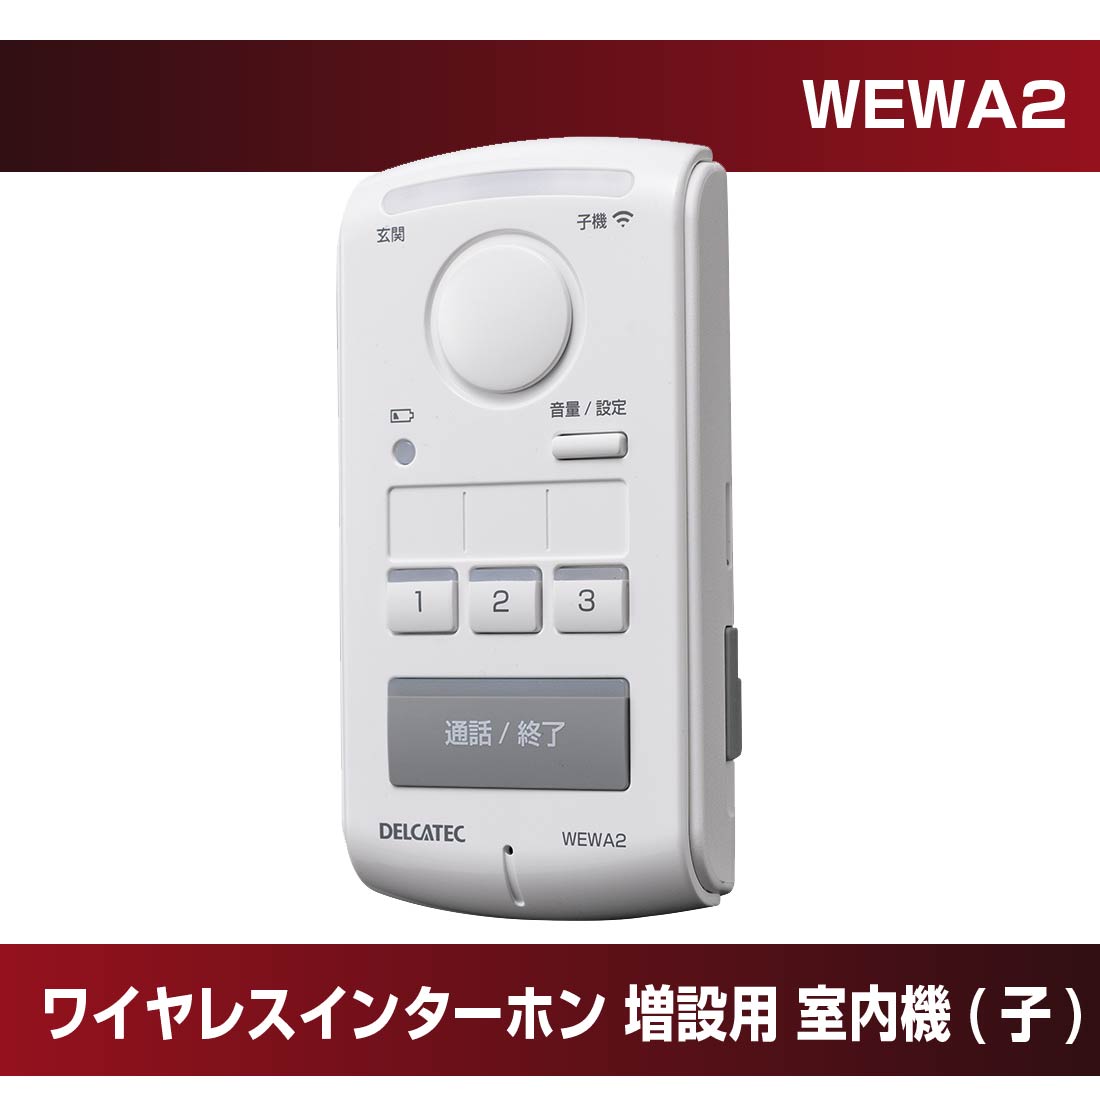 【在庫有】WEWA2 ワイヤレスインターホン 増設用 室内機(子) DXアンテナ プロポチ